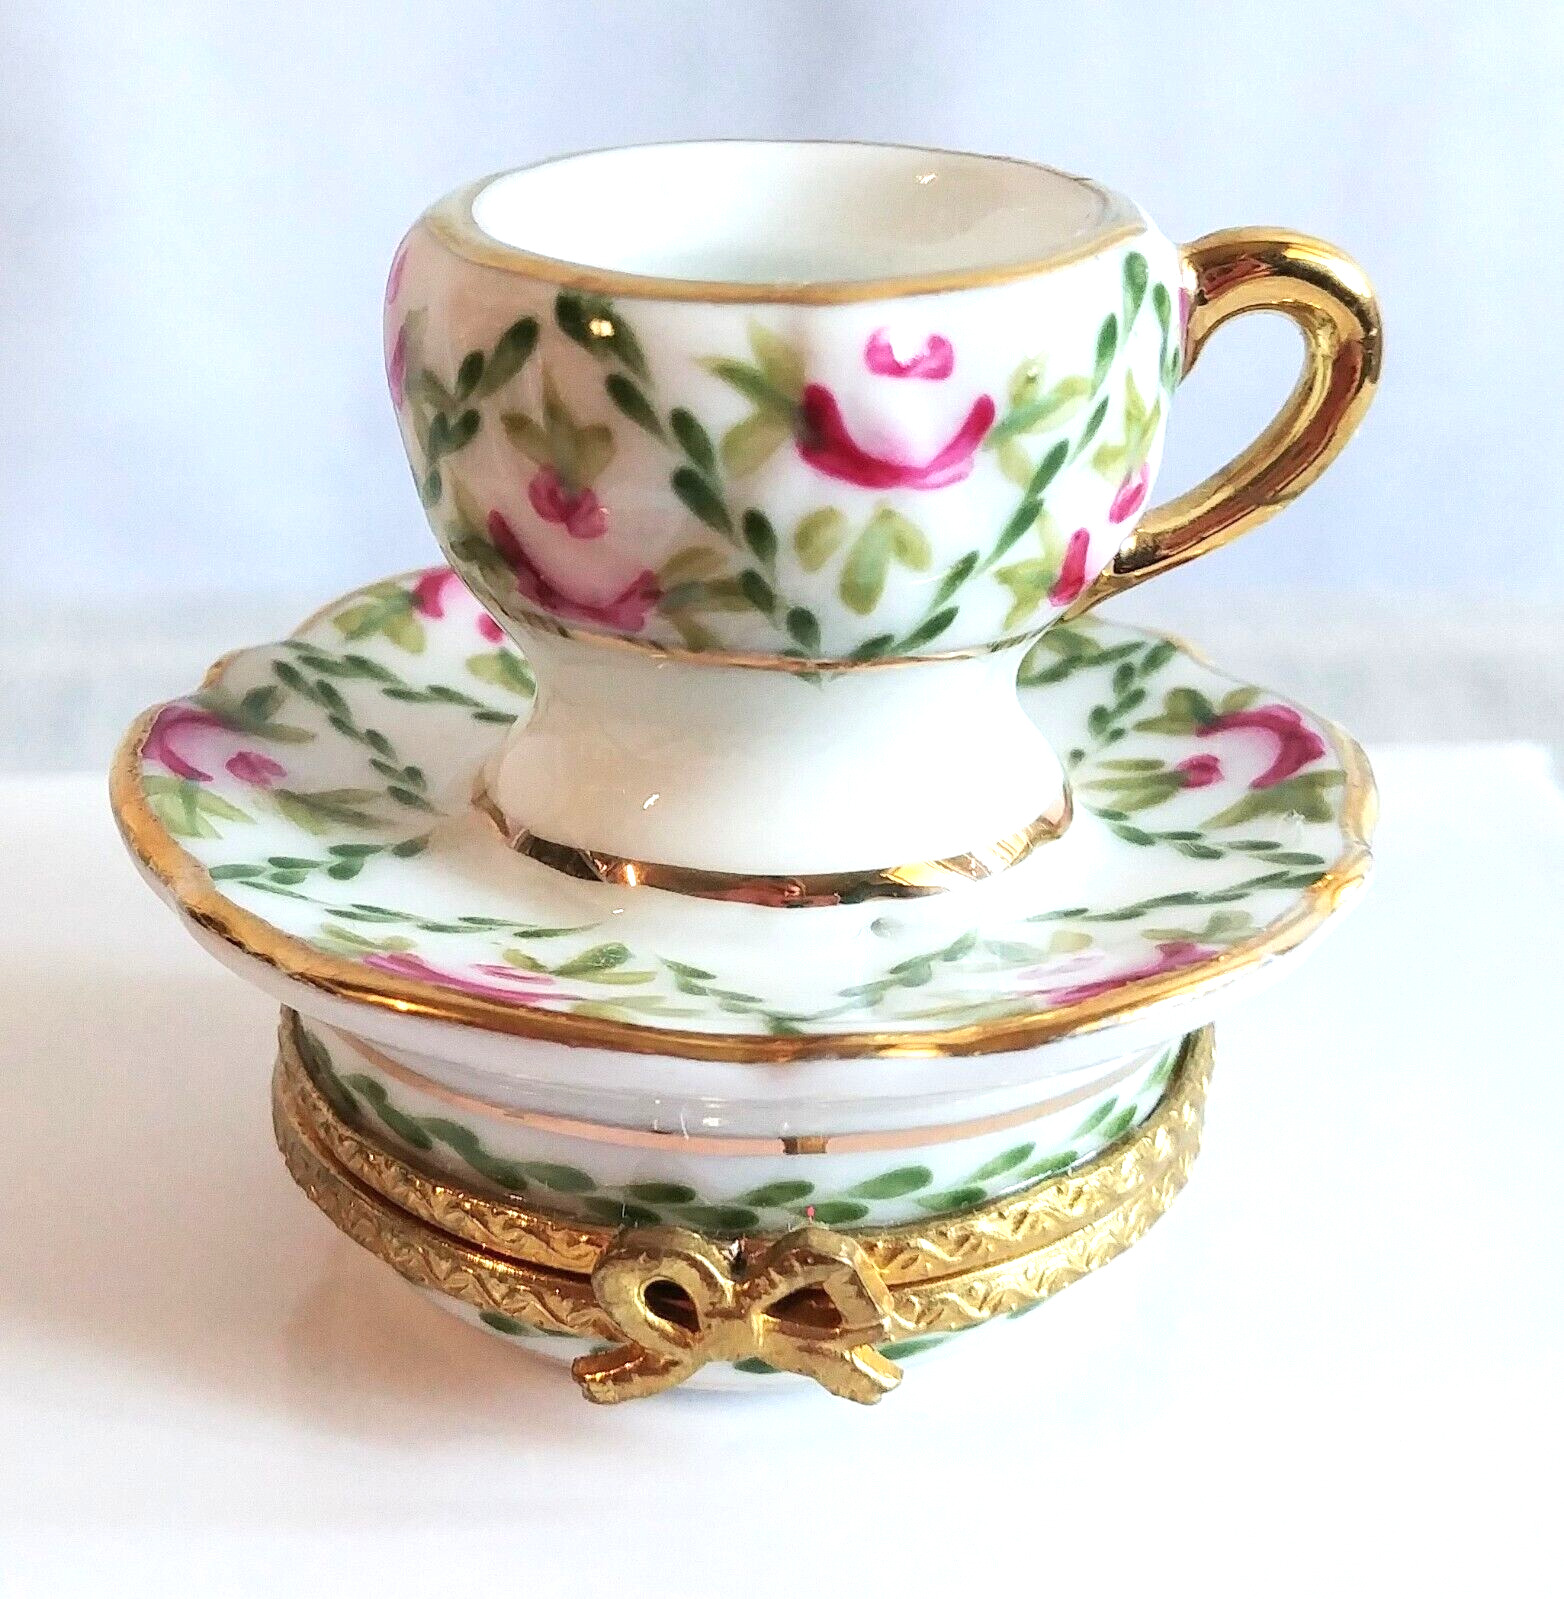 Vintage Limoges France trinket box - floral tea cup and saucer - teacup